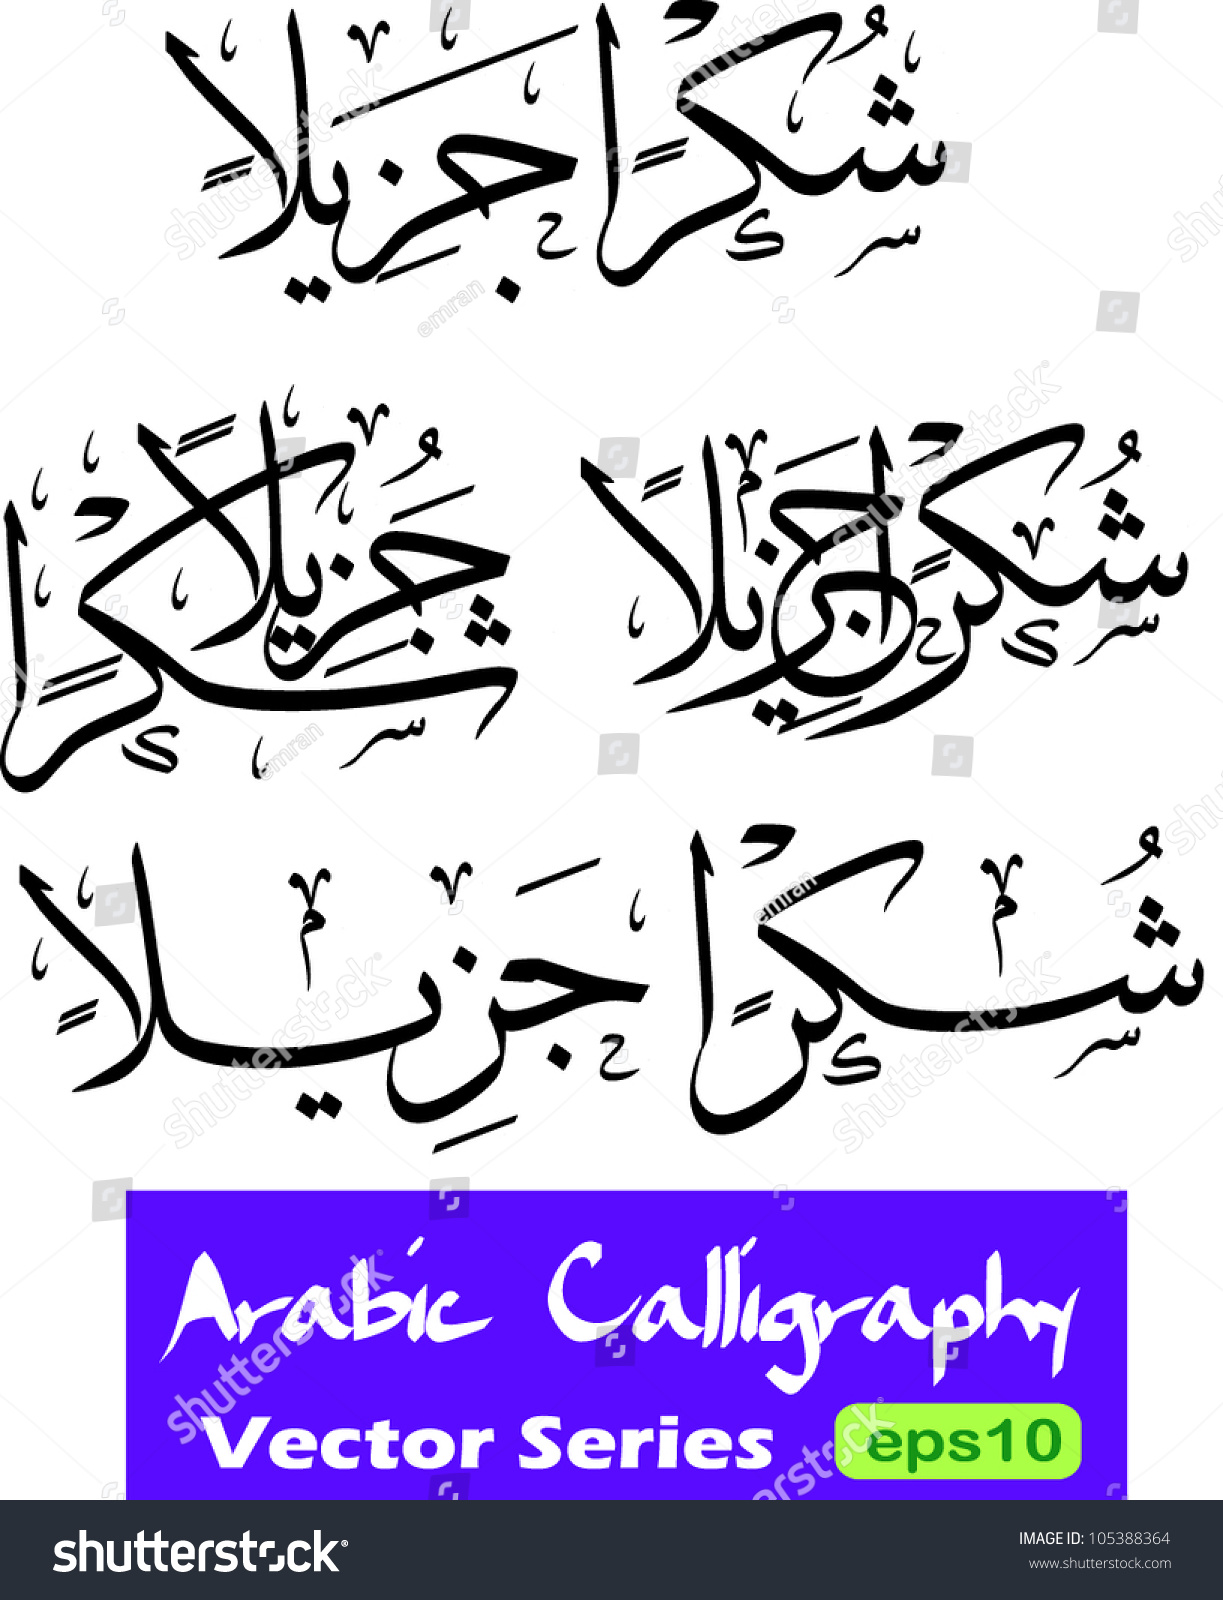 Как будет привет на арабском. Приветствие на арабском. Здравствуйте на арабском. Приветствие на арсьском. Поздороваться на арабском.